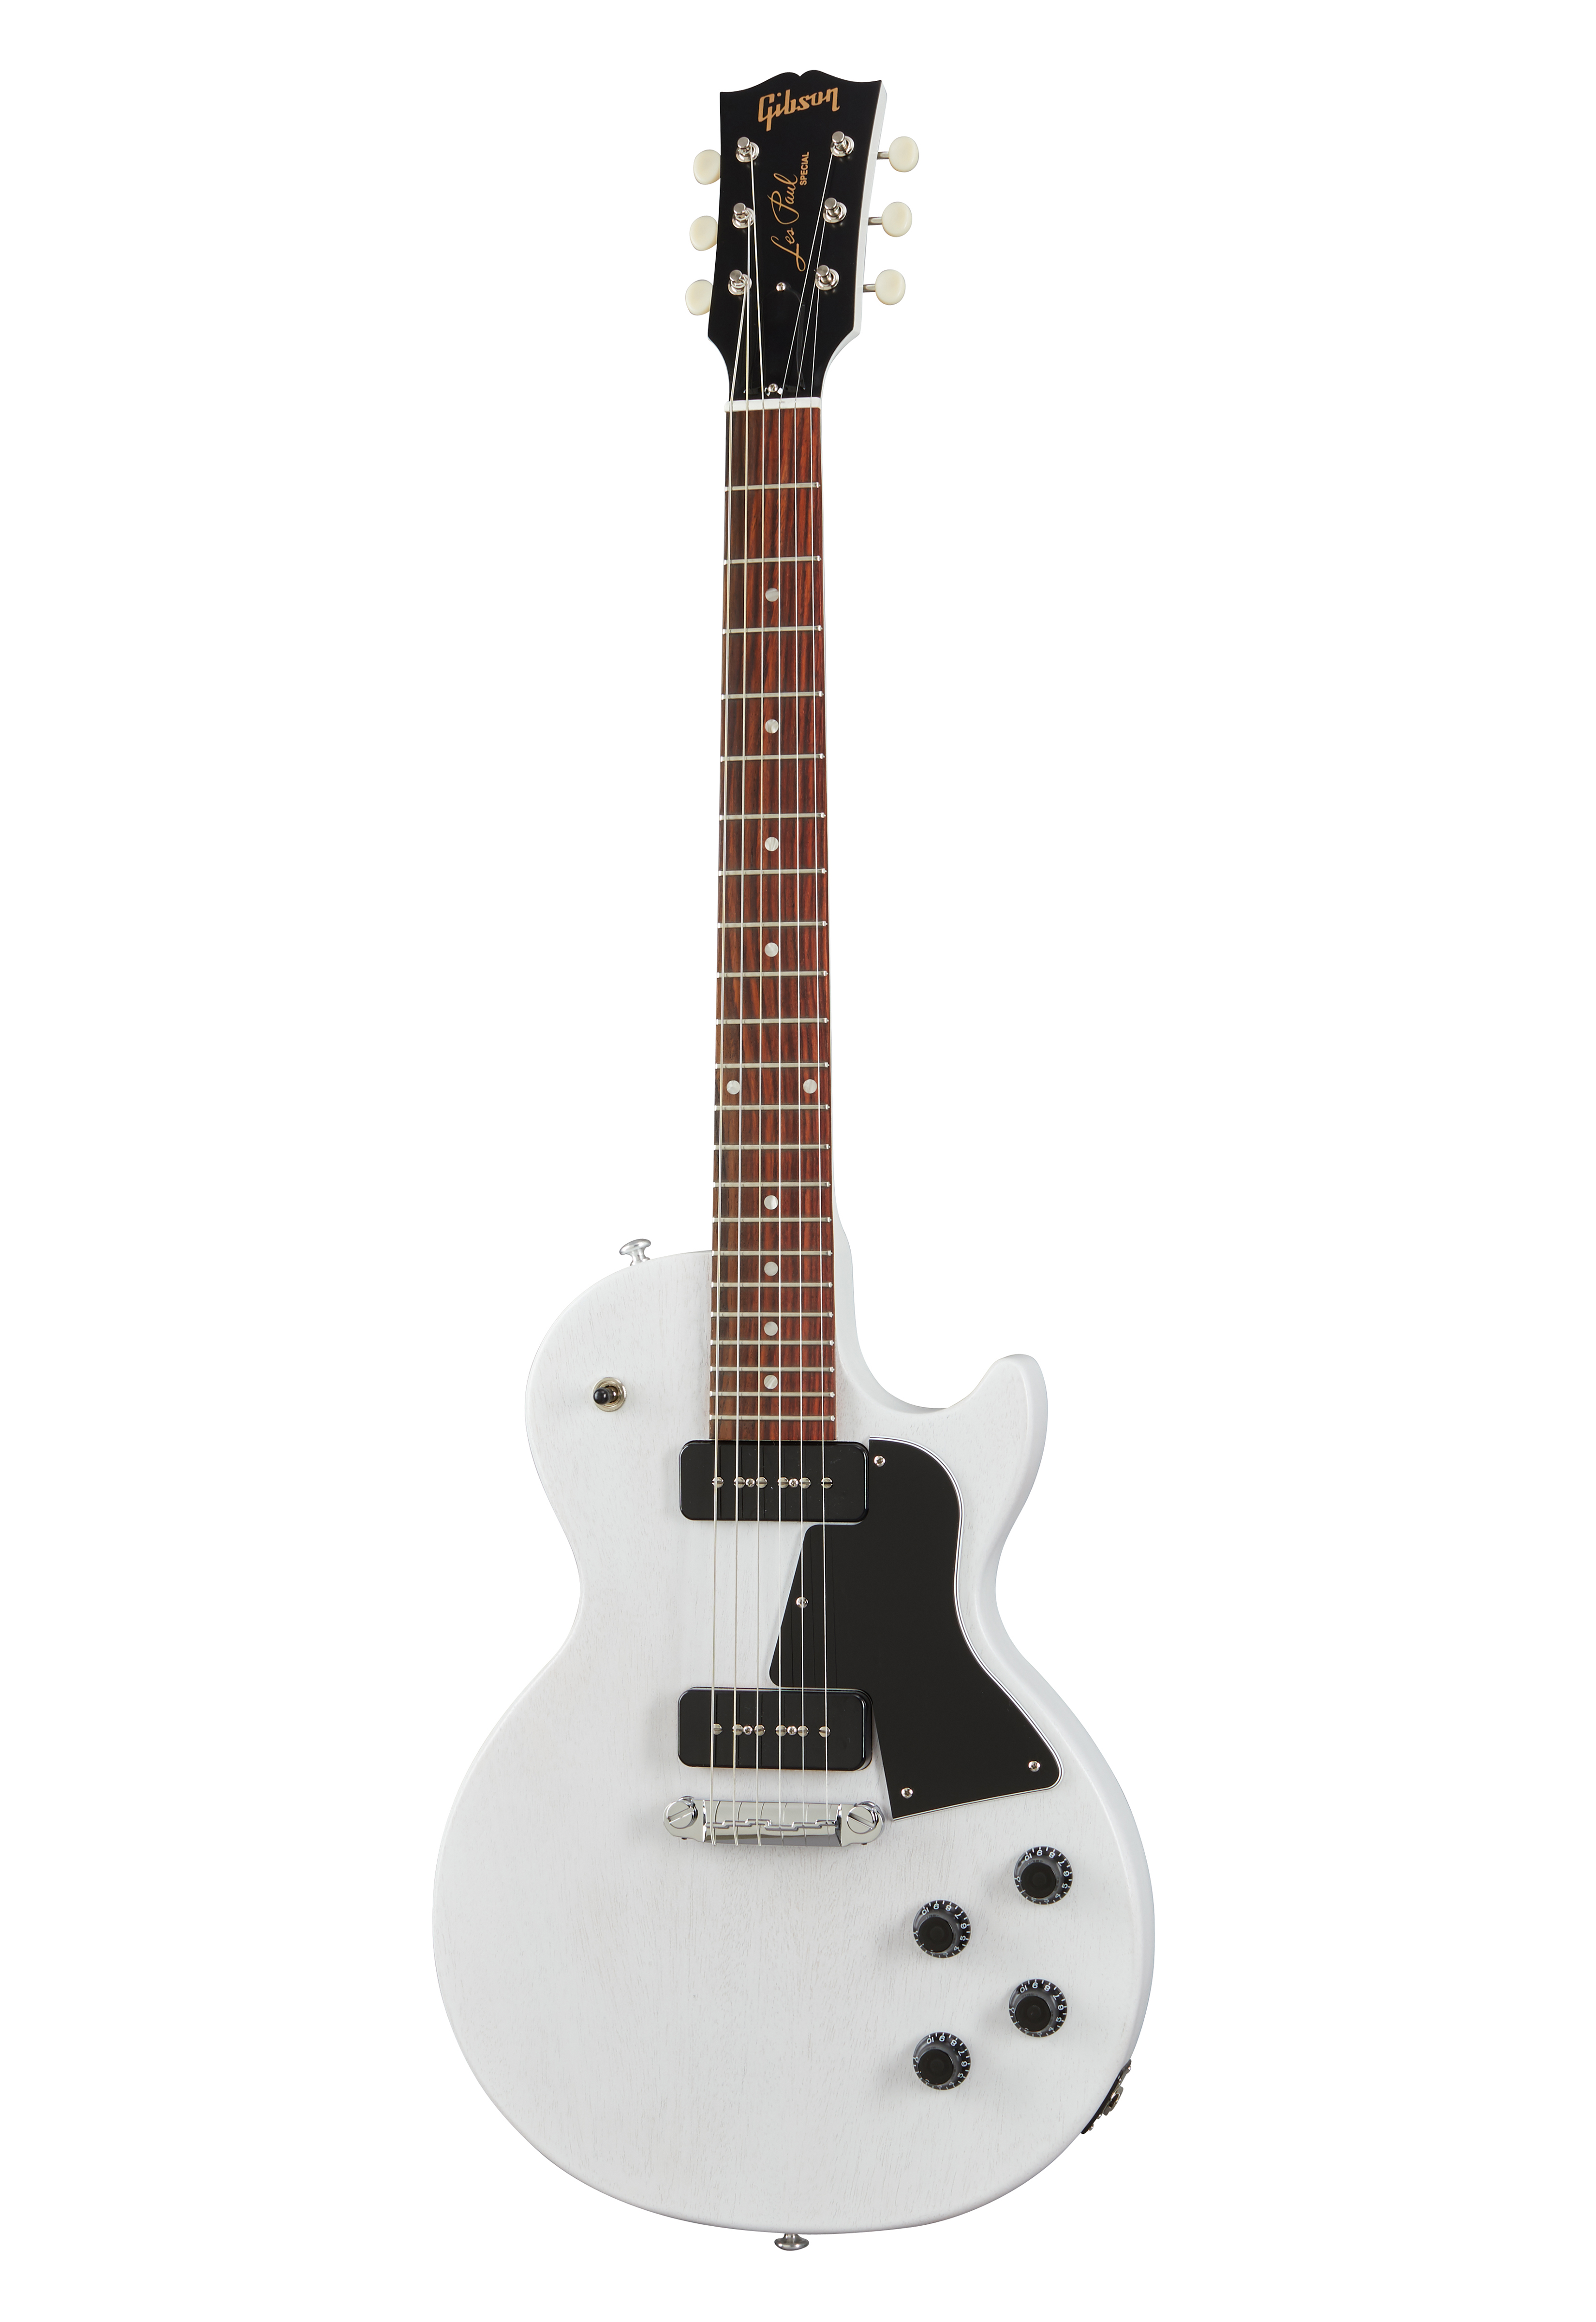 日本特価Gibson Les Paul Special Tribute Humbucker Worn White Satin エレキギター ギブソン 中古 W6528439 ギブソン